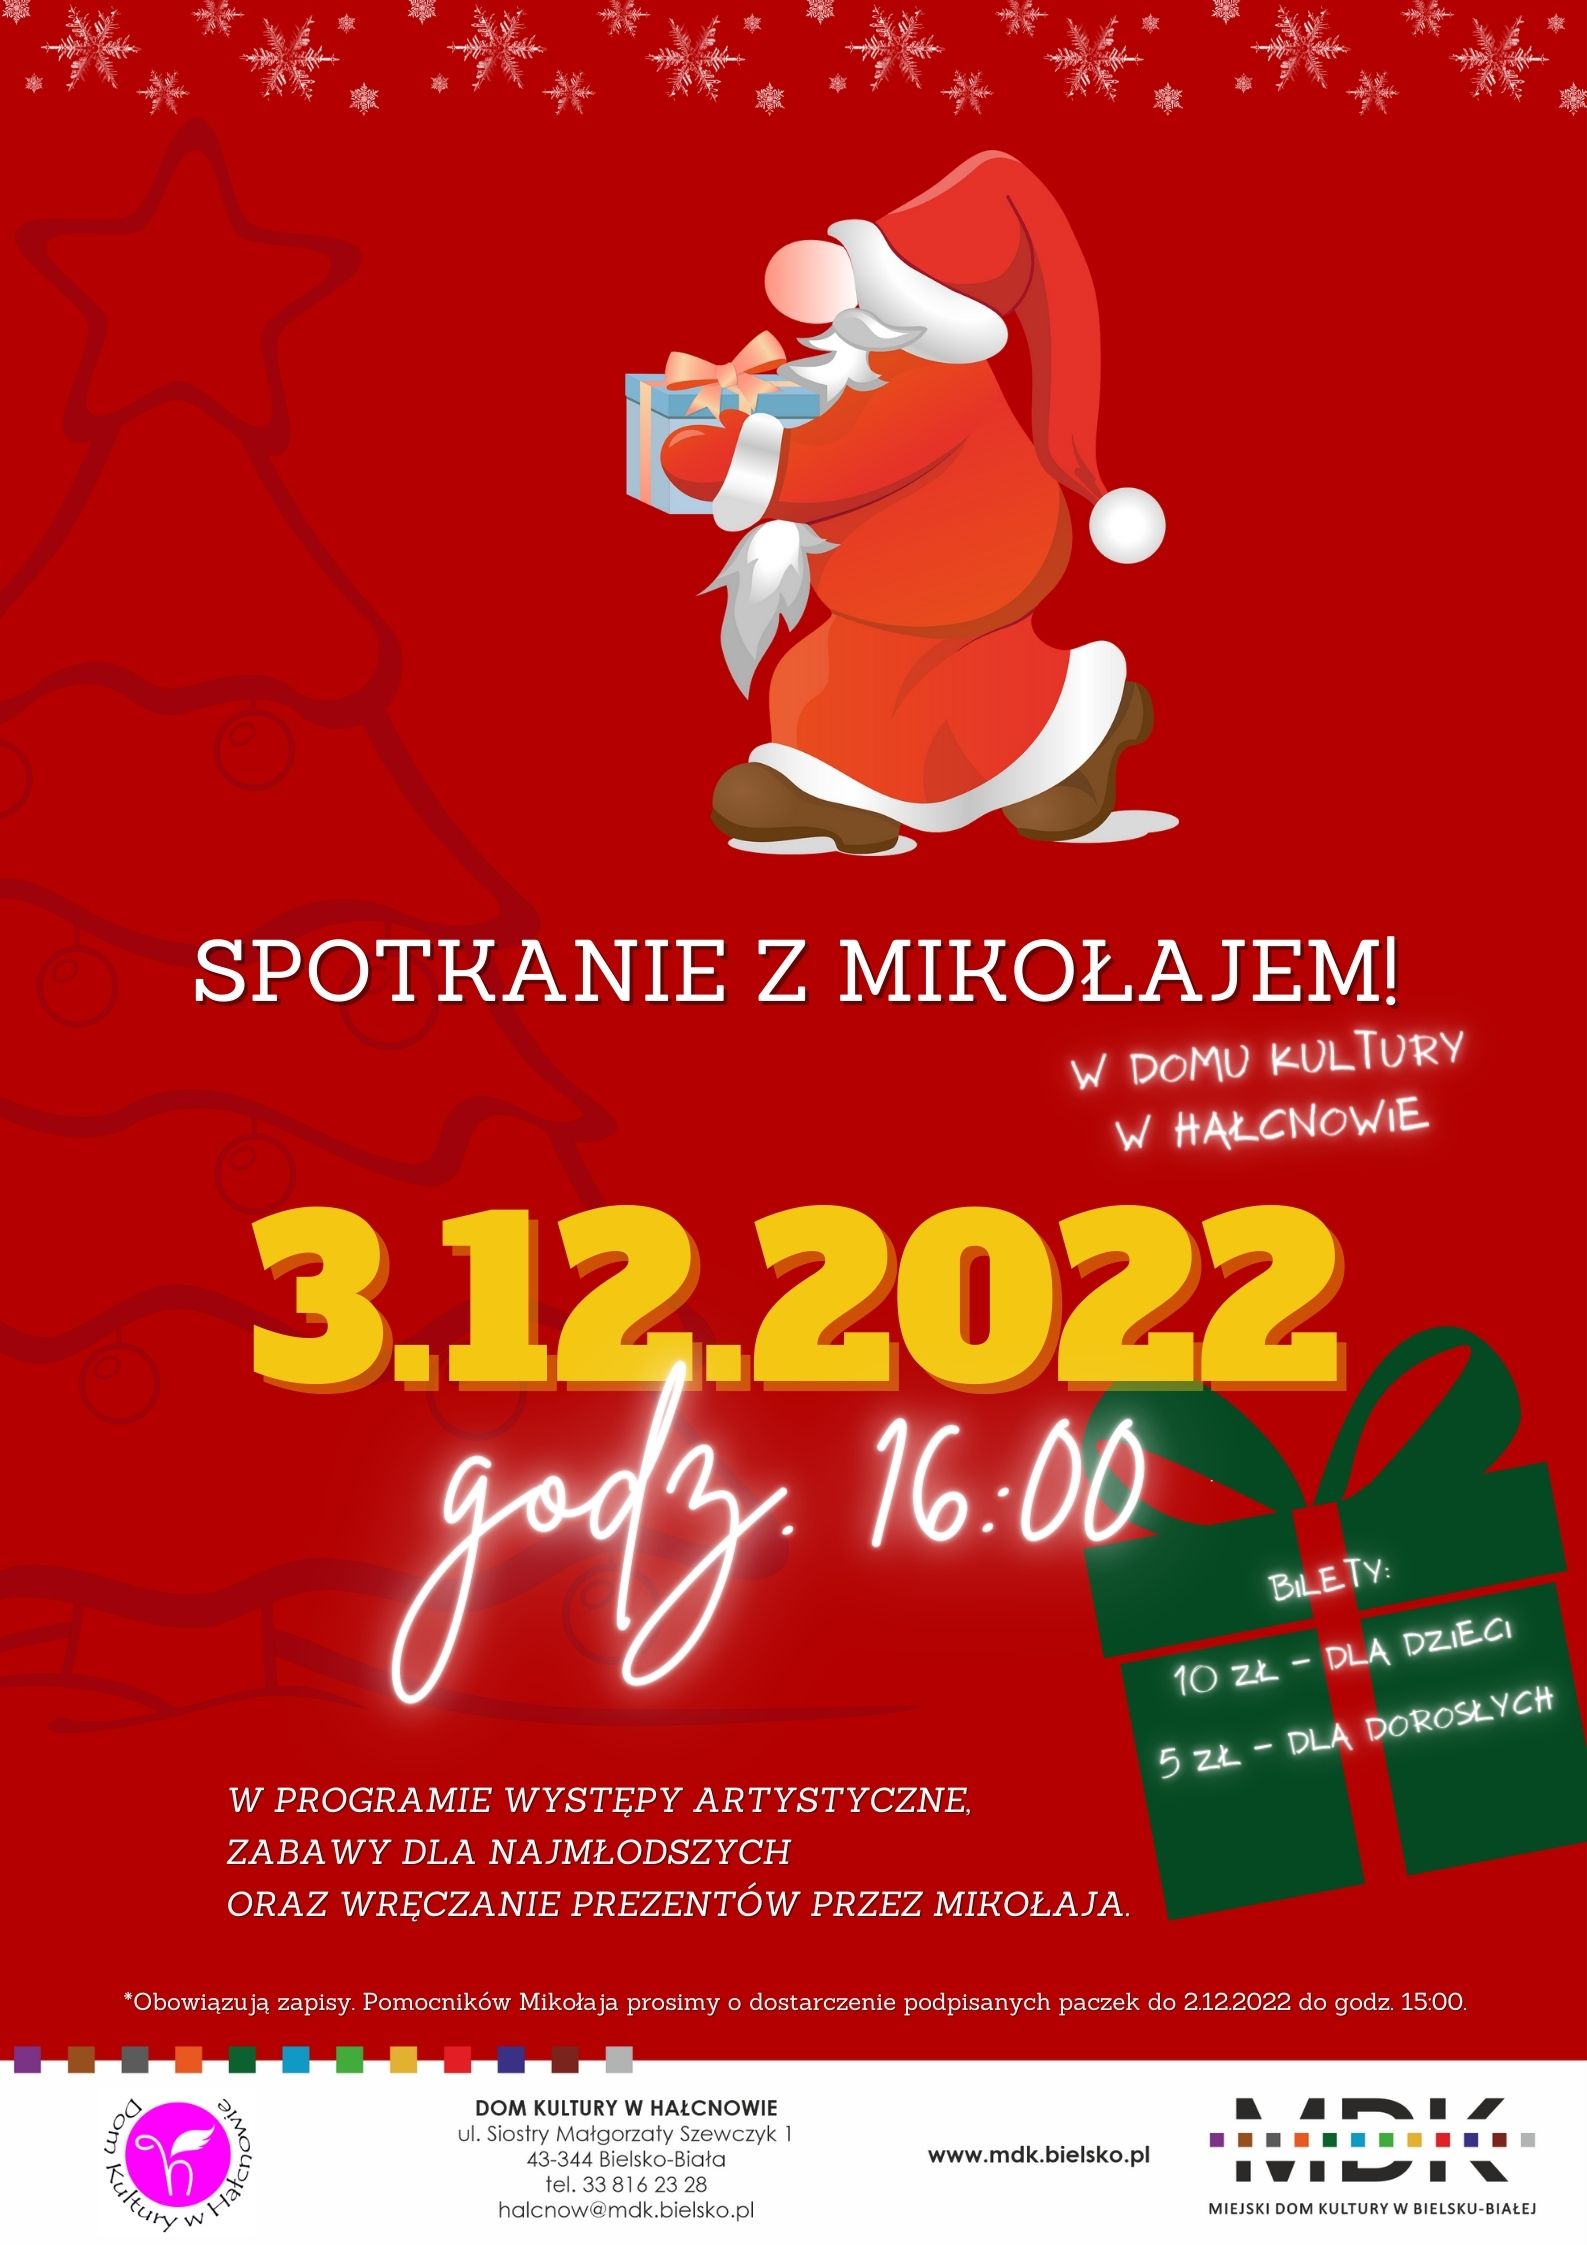  Spotkanie z Mikołajem w DK w Hałcnowie Na zdjęciu plakat